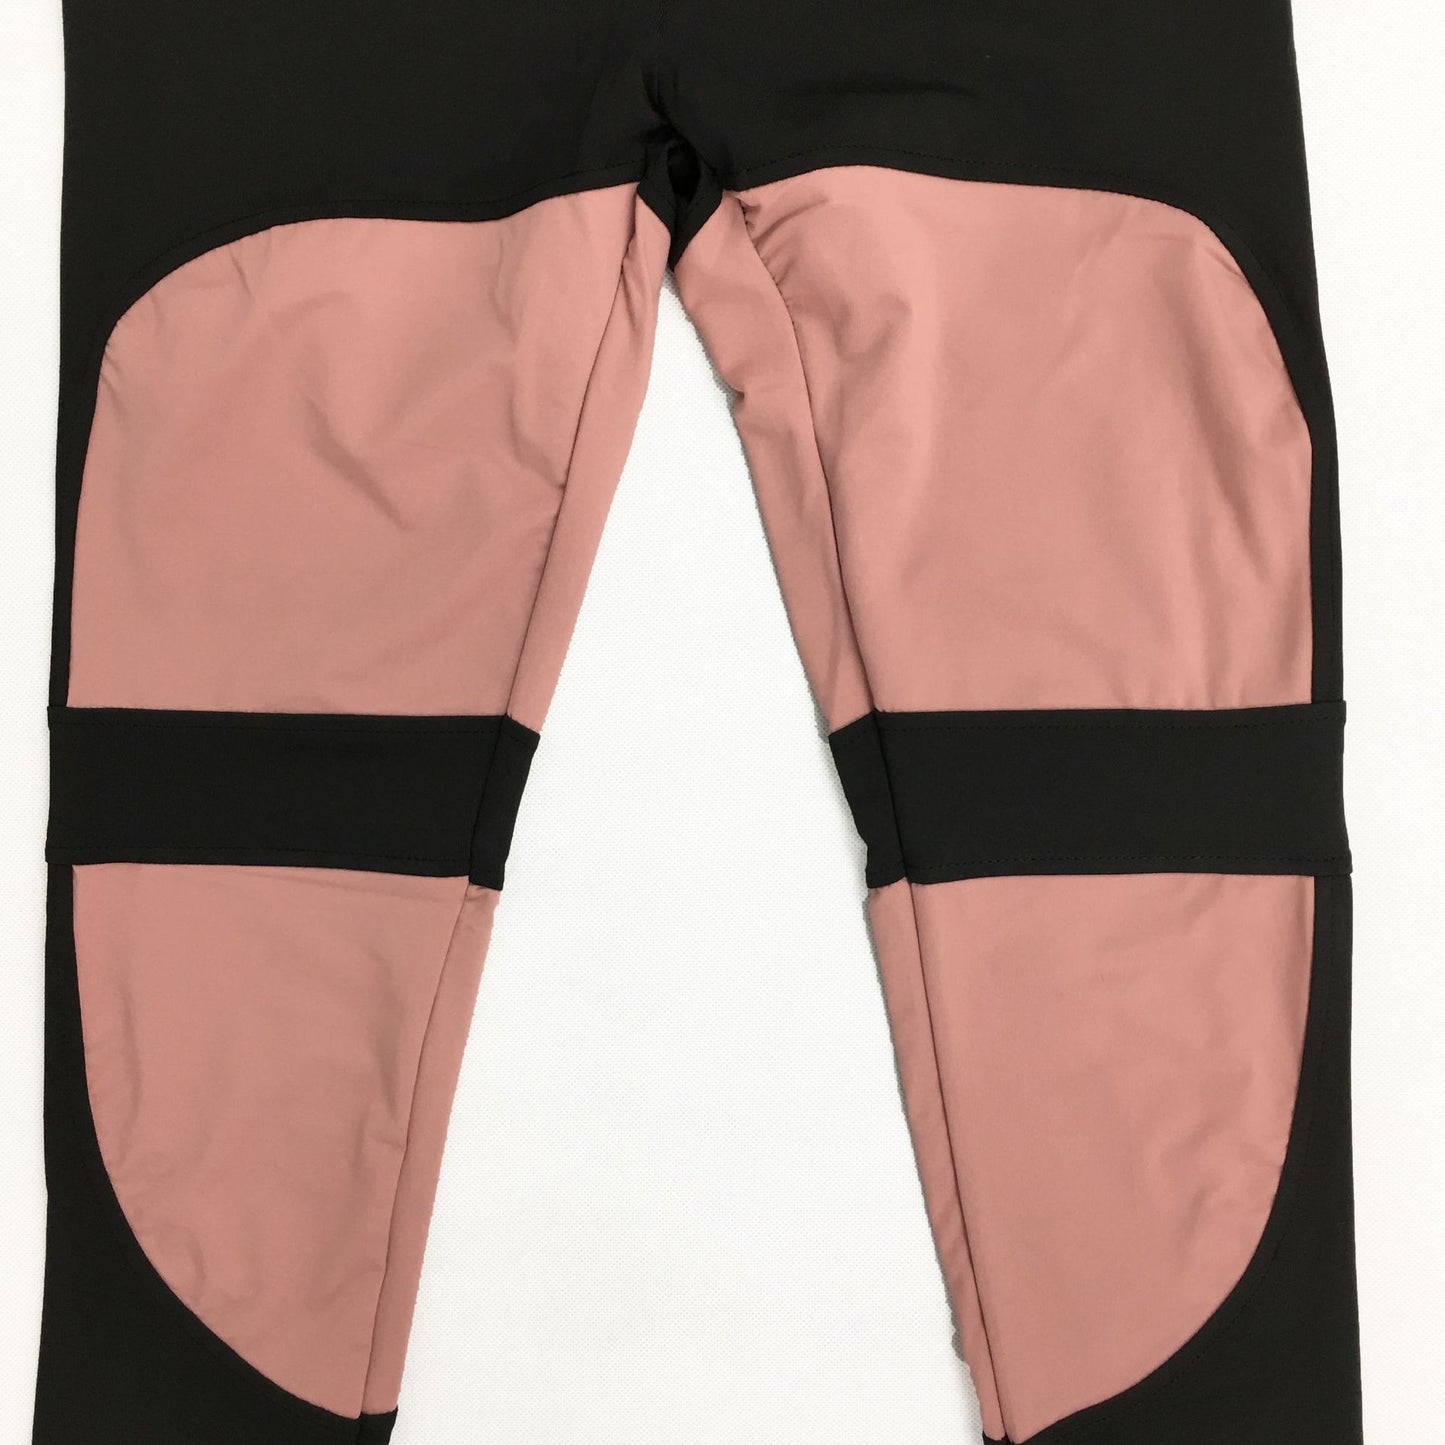 Women's yoga pants with mesh panel